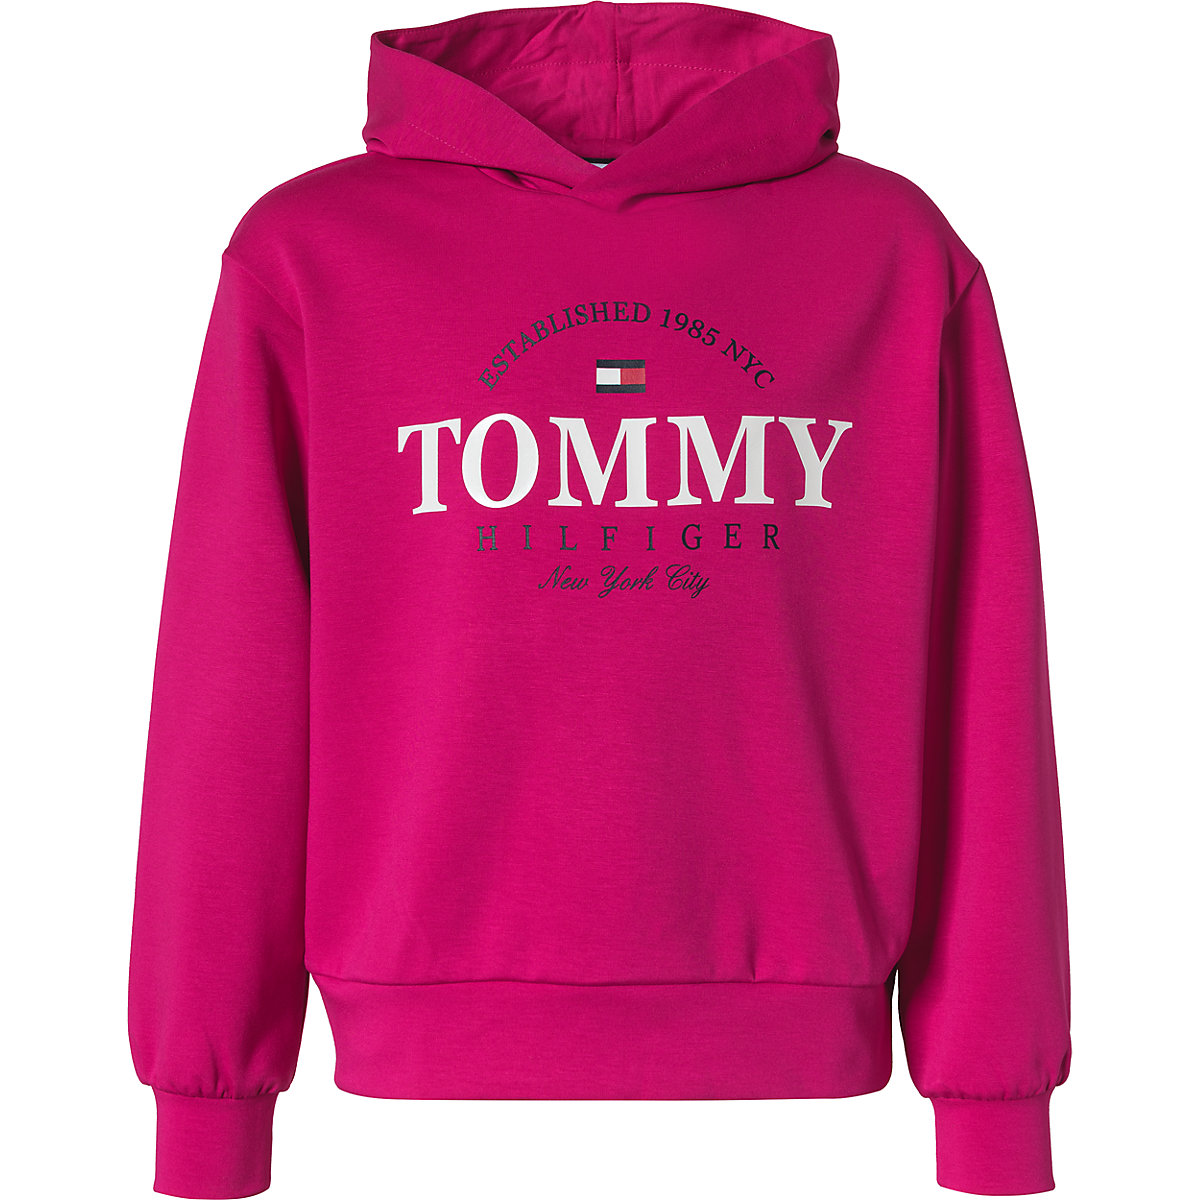 TOMMY HILFIGER Kapuzenpullover für Mädchen pink